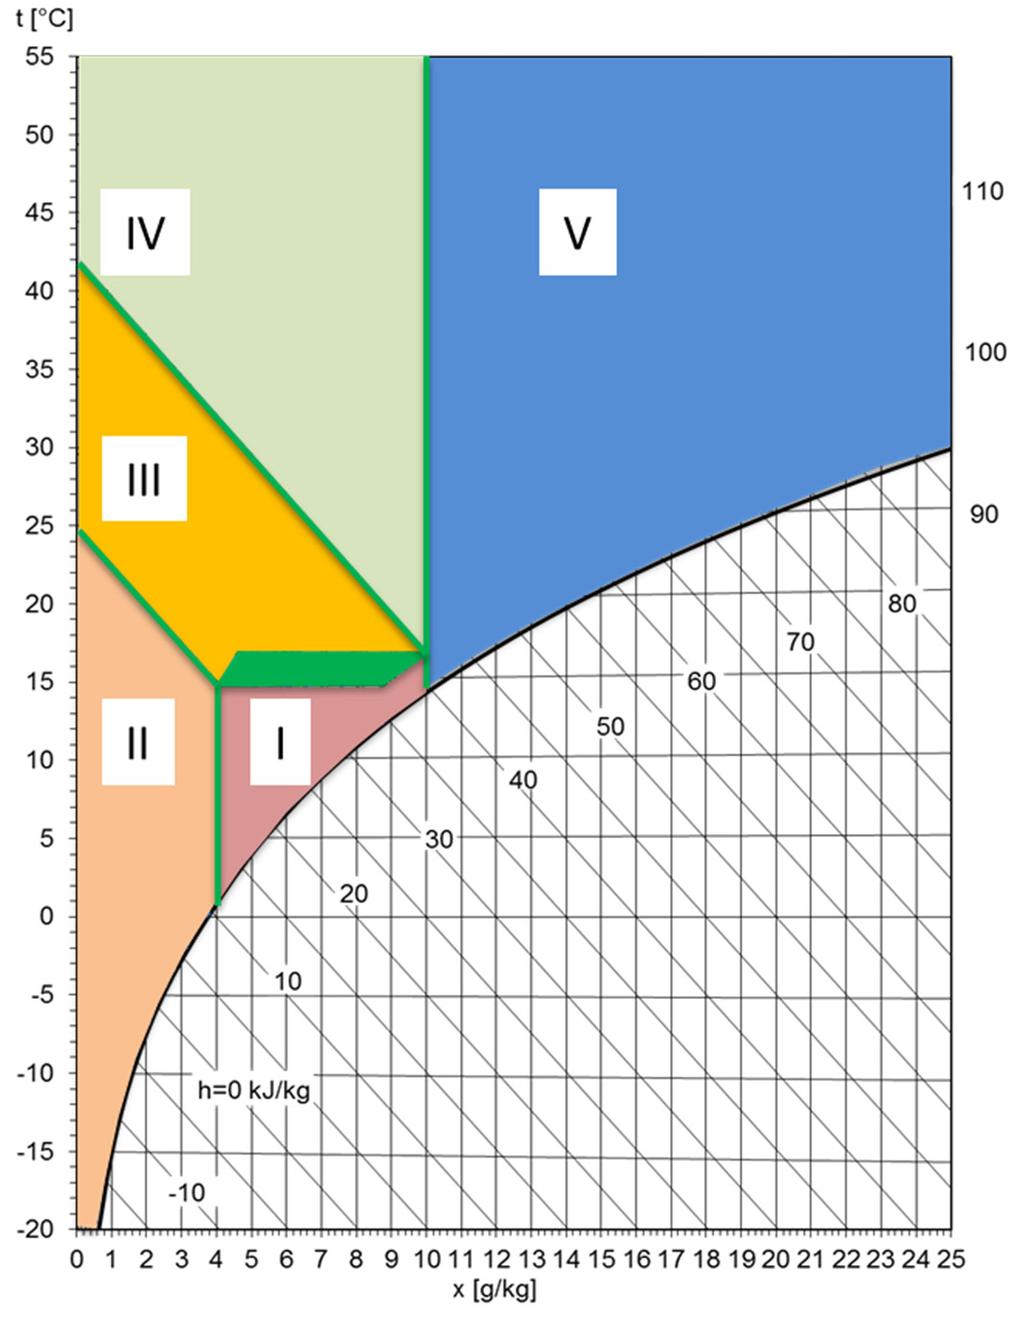 5.1. att. Gaisa apstrādes režīmi Moljē diagrammā Izvēlētajai gaisa apstrādes konfigurācijai var galvenokārt izšķirt 5 iespējamos gaisa apstrādes režīmus.